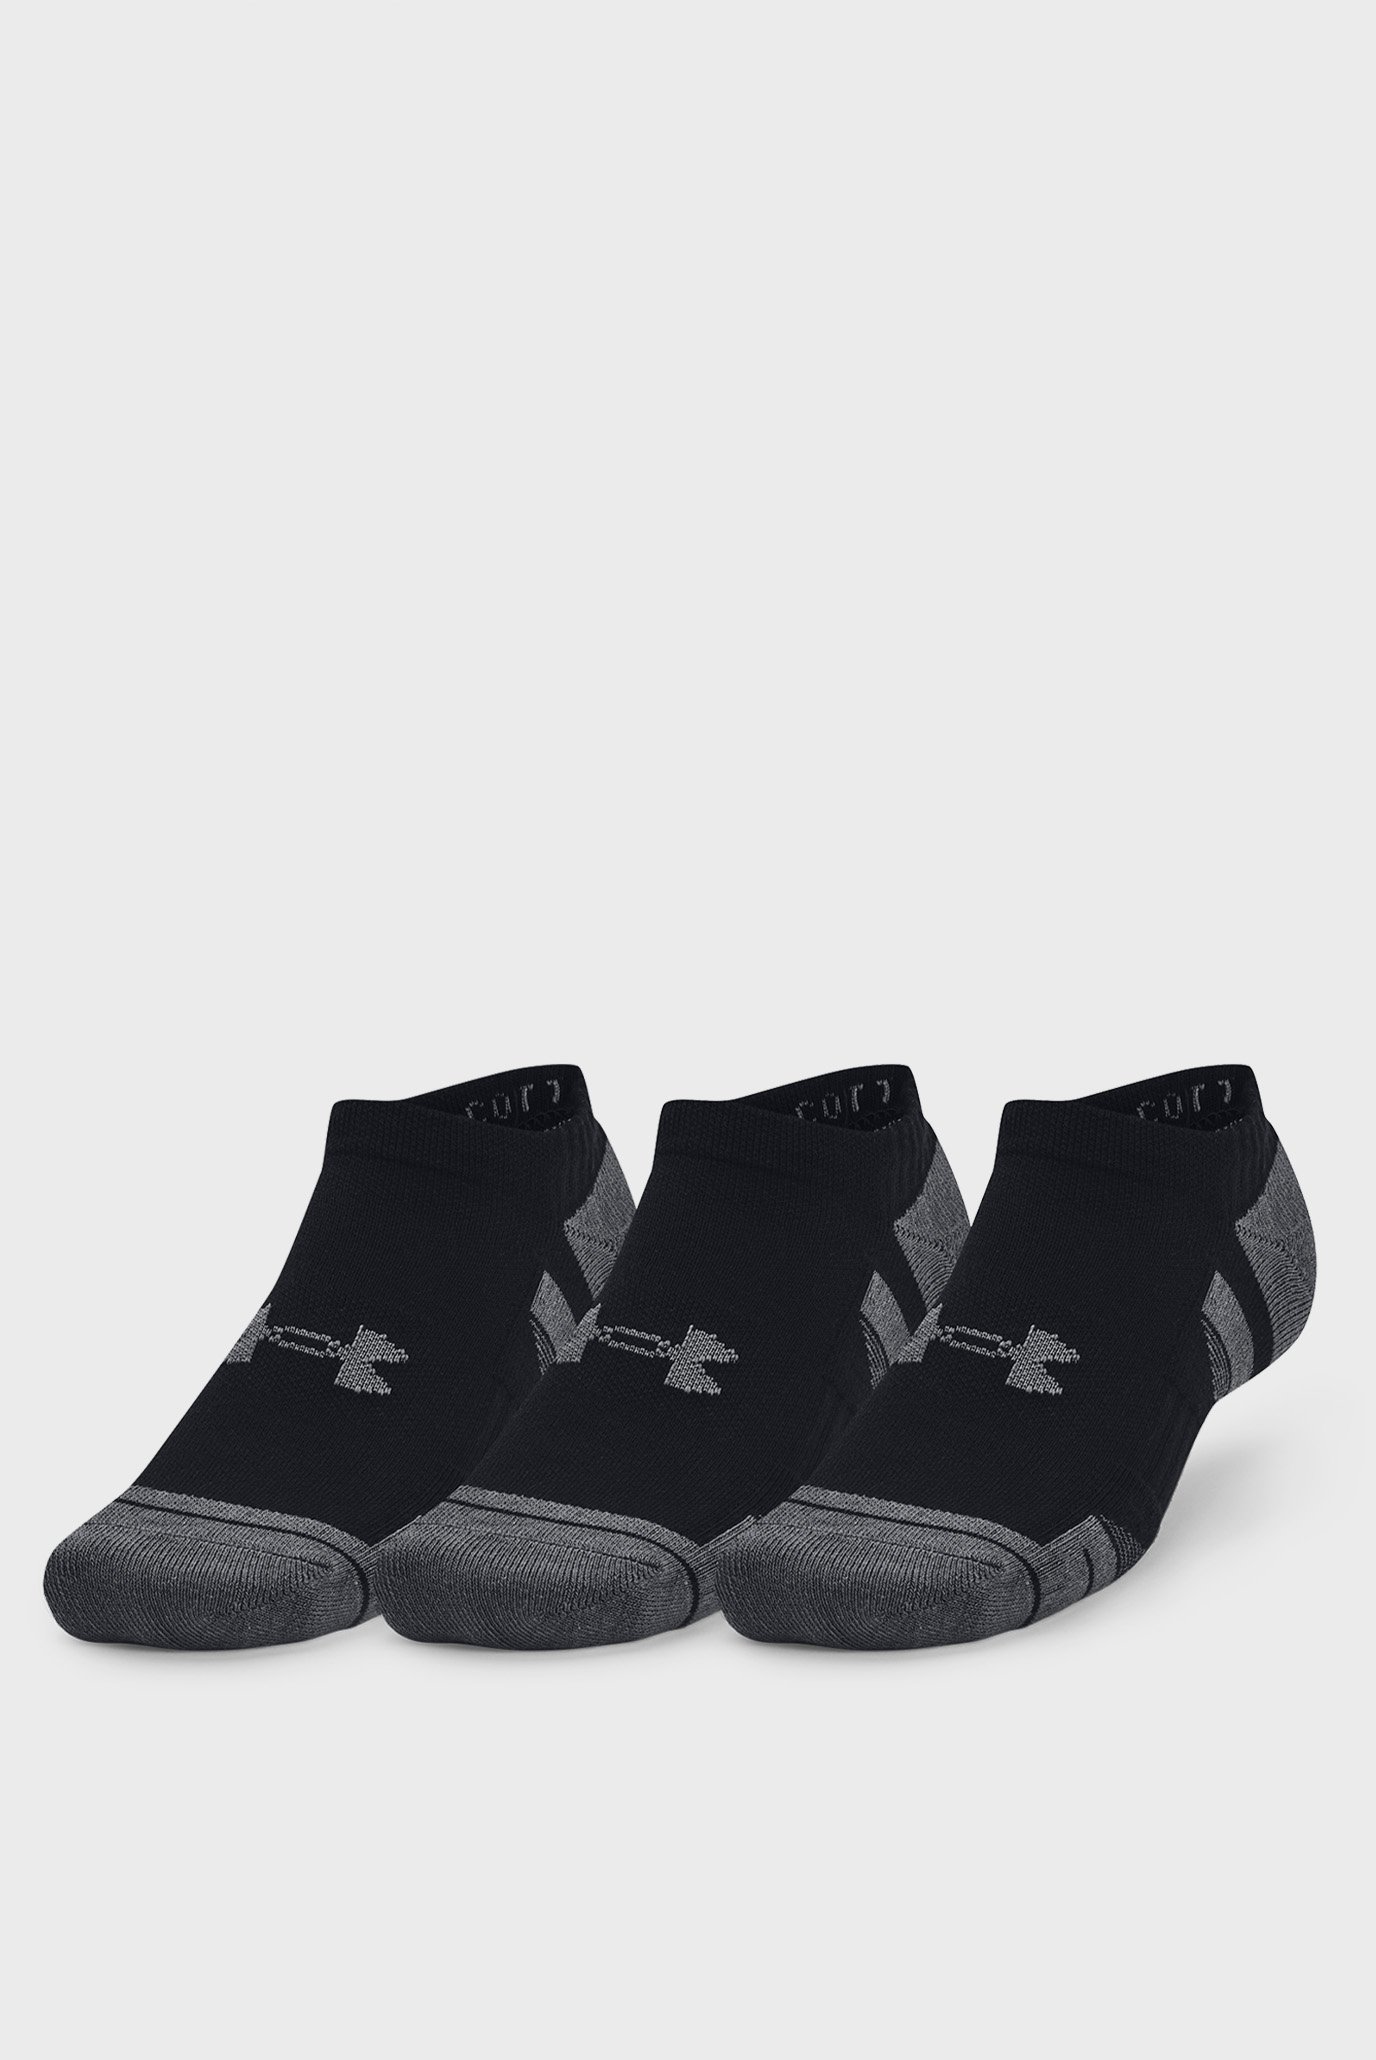 Черные носки (3 пары) UA Performance Cotton 3pk NS 1